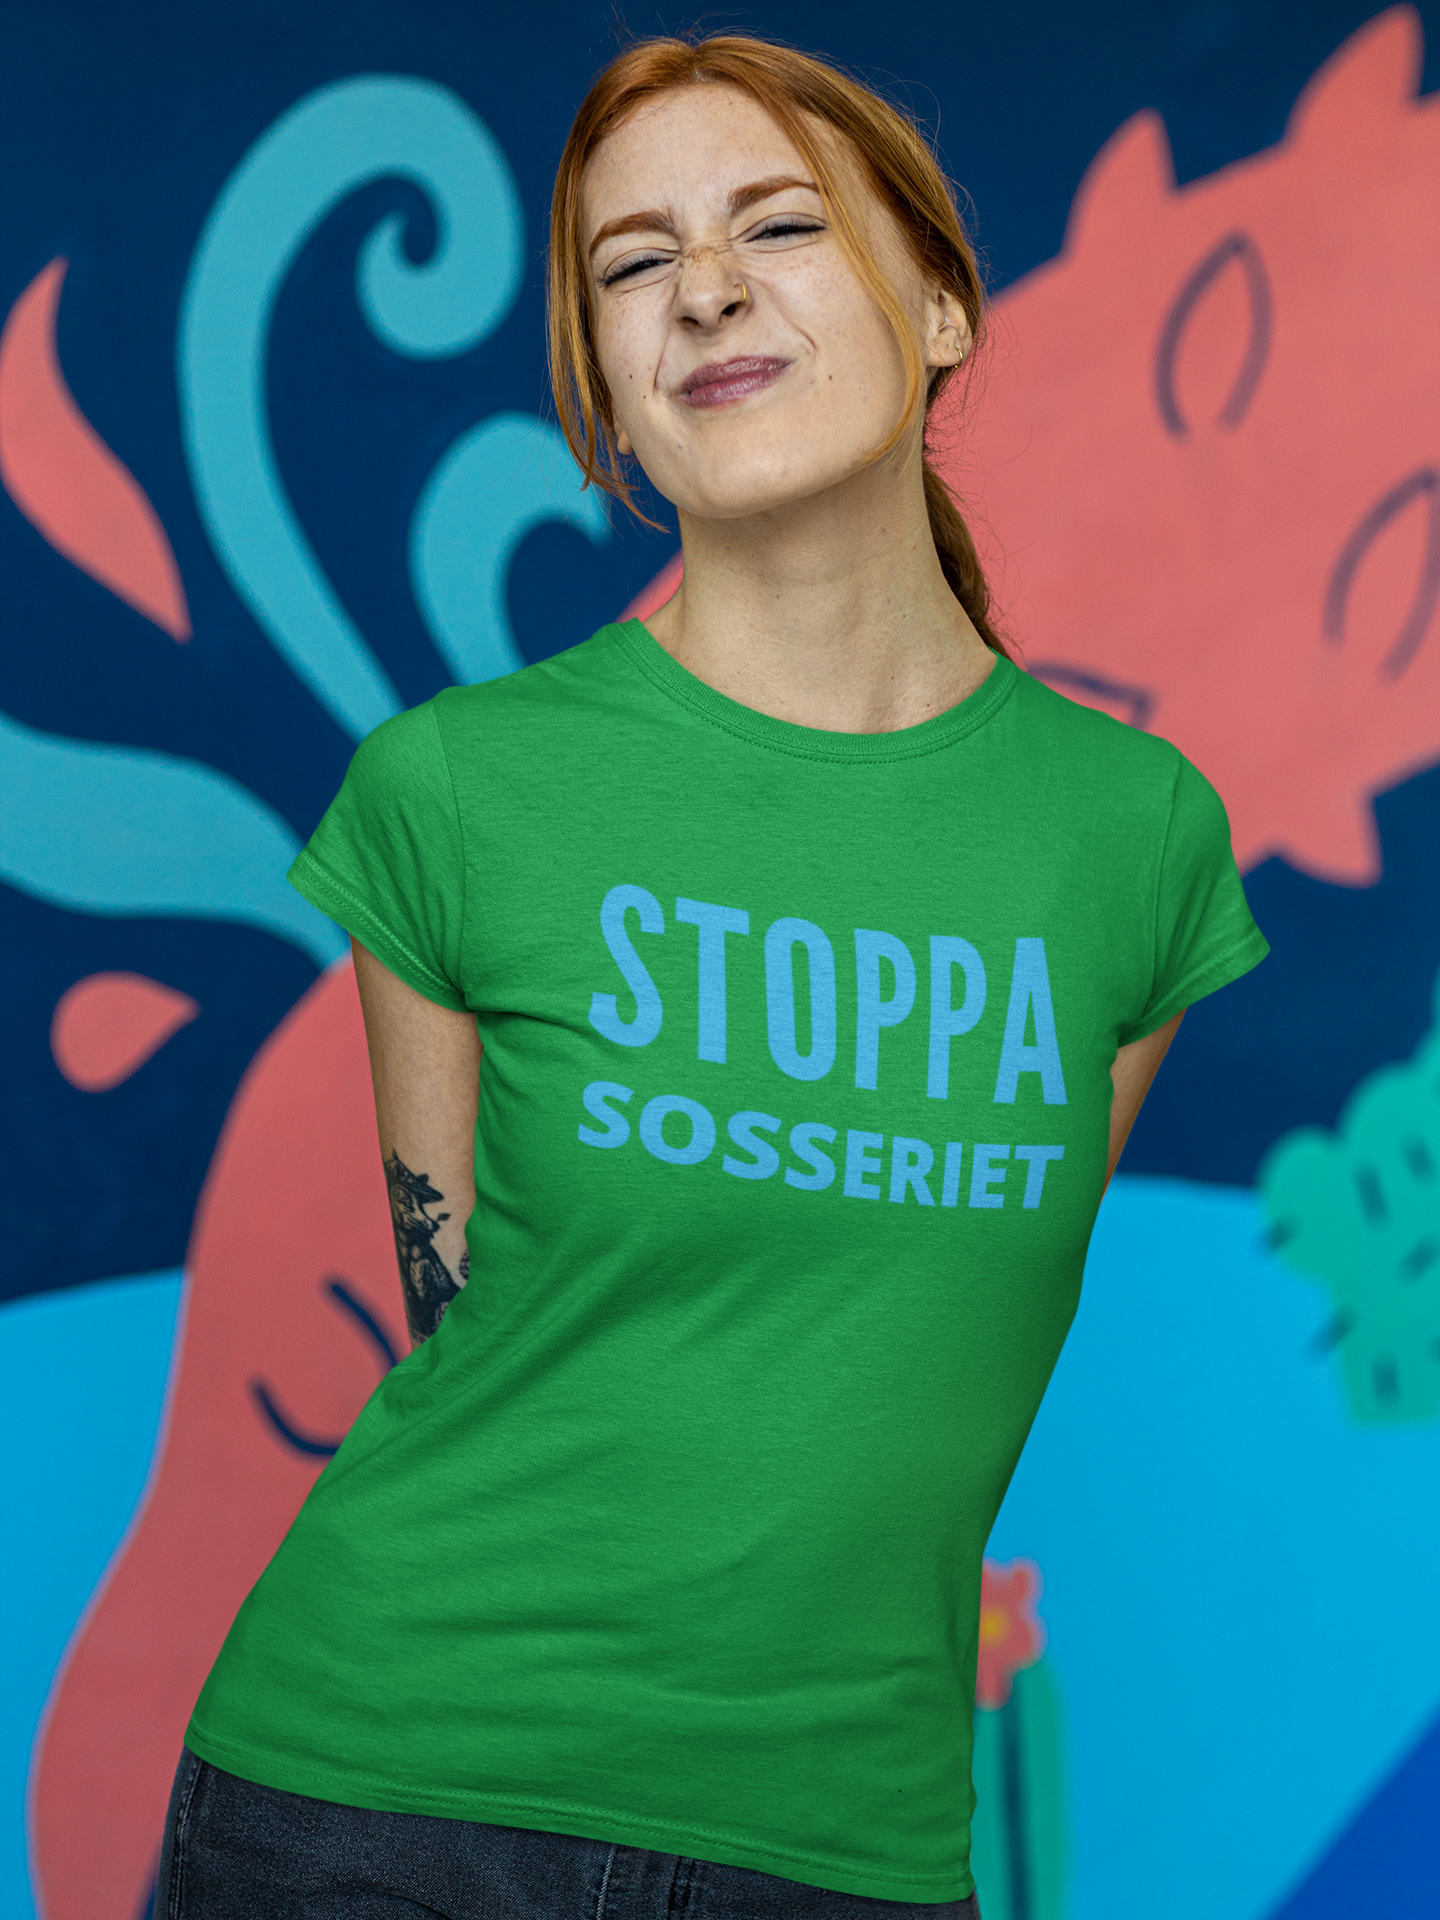 Stoppa Sosseriet, Årets viktigaste politiska tröja/Tshirt, Finns i lager, Ungsvenskarna Stoppa sosseriet